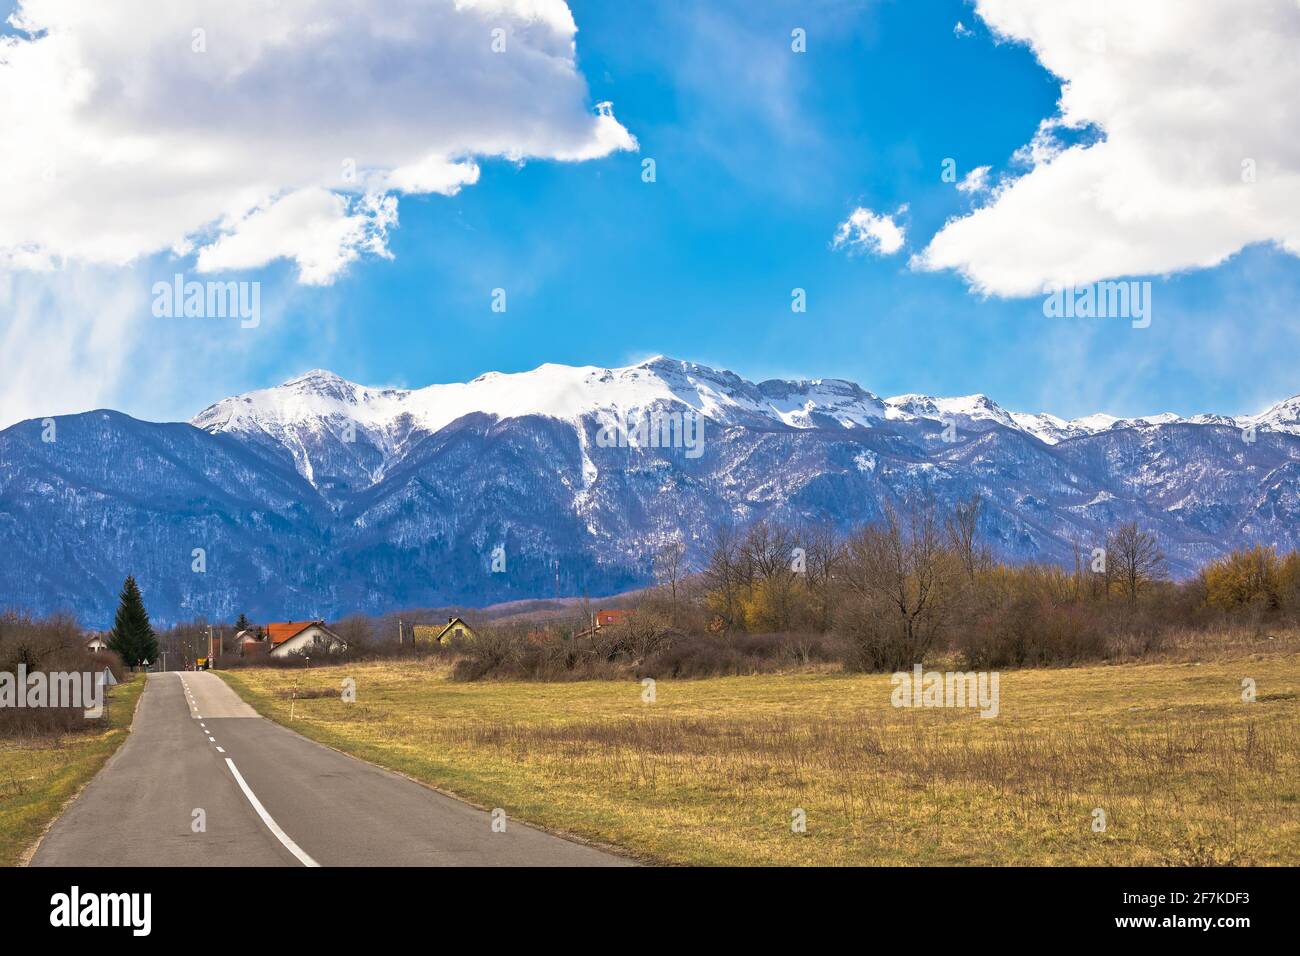 Lika Road Landschaft und Velebit Berg schneebedeckten Gipfeln Blick, Lika Region von Kroatien Stockfoto